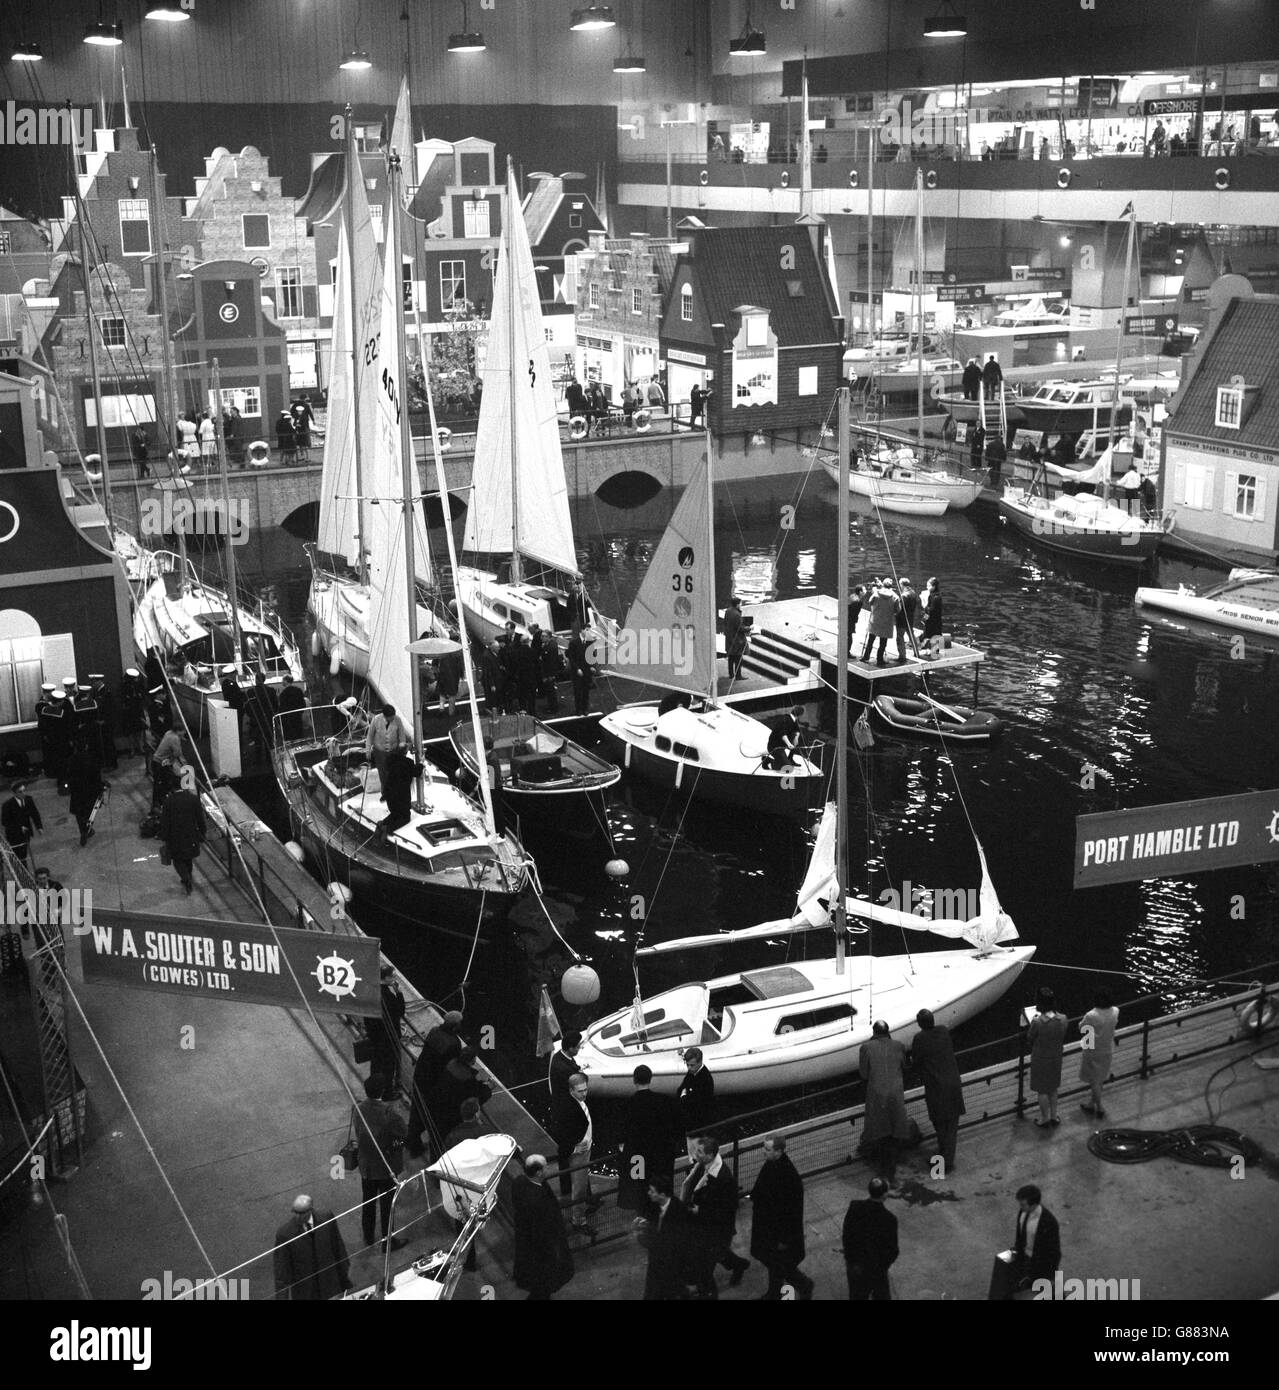 Una escena de Ámsterdam con barcos en el puerto es el tema central creado en Earls Court, Londres, para el Salón Internacional de Barcos. Embarcaciones en el puerto son algunos de los más de 600 barcos que han sido enviados desde 17 países para el espectáculo. Foto de stock